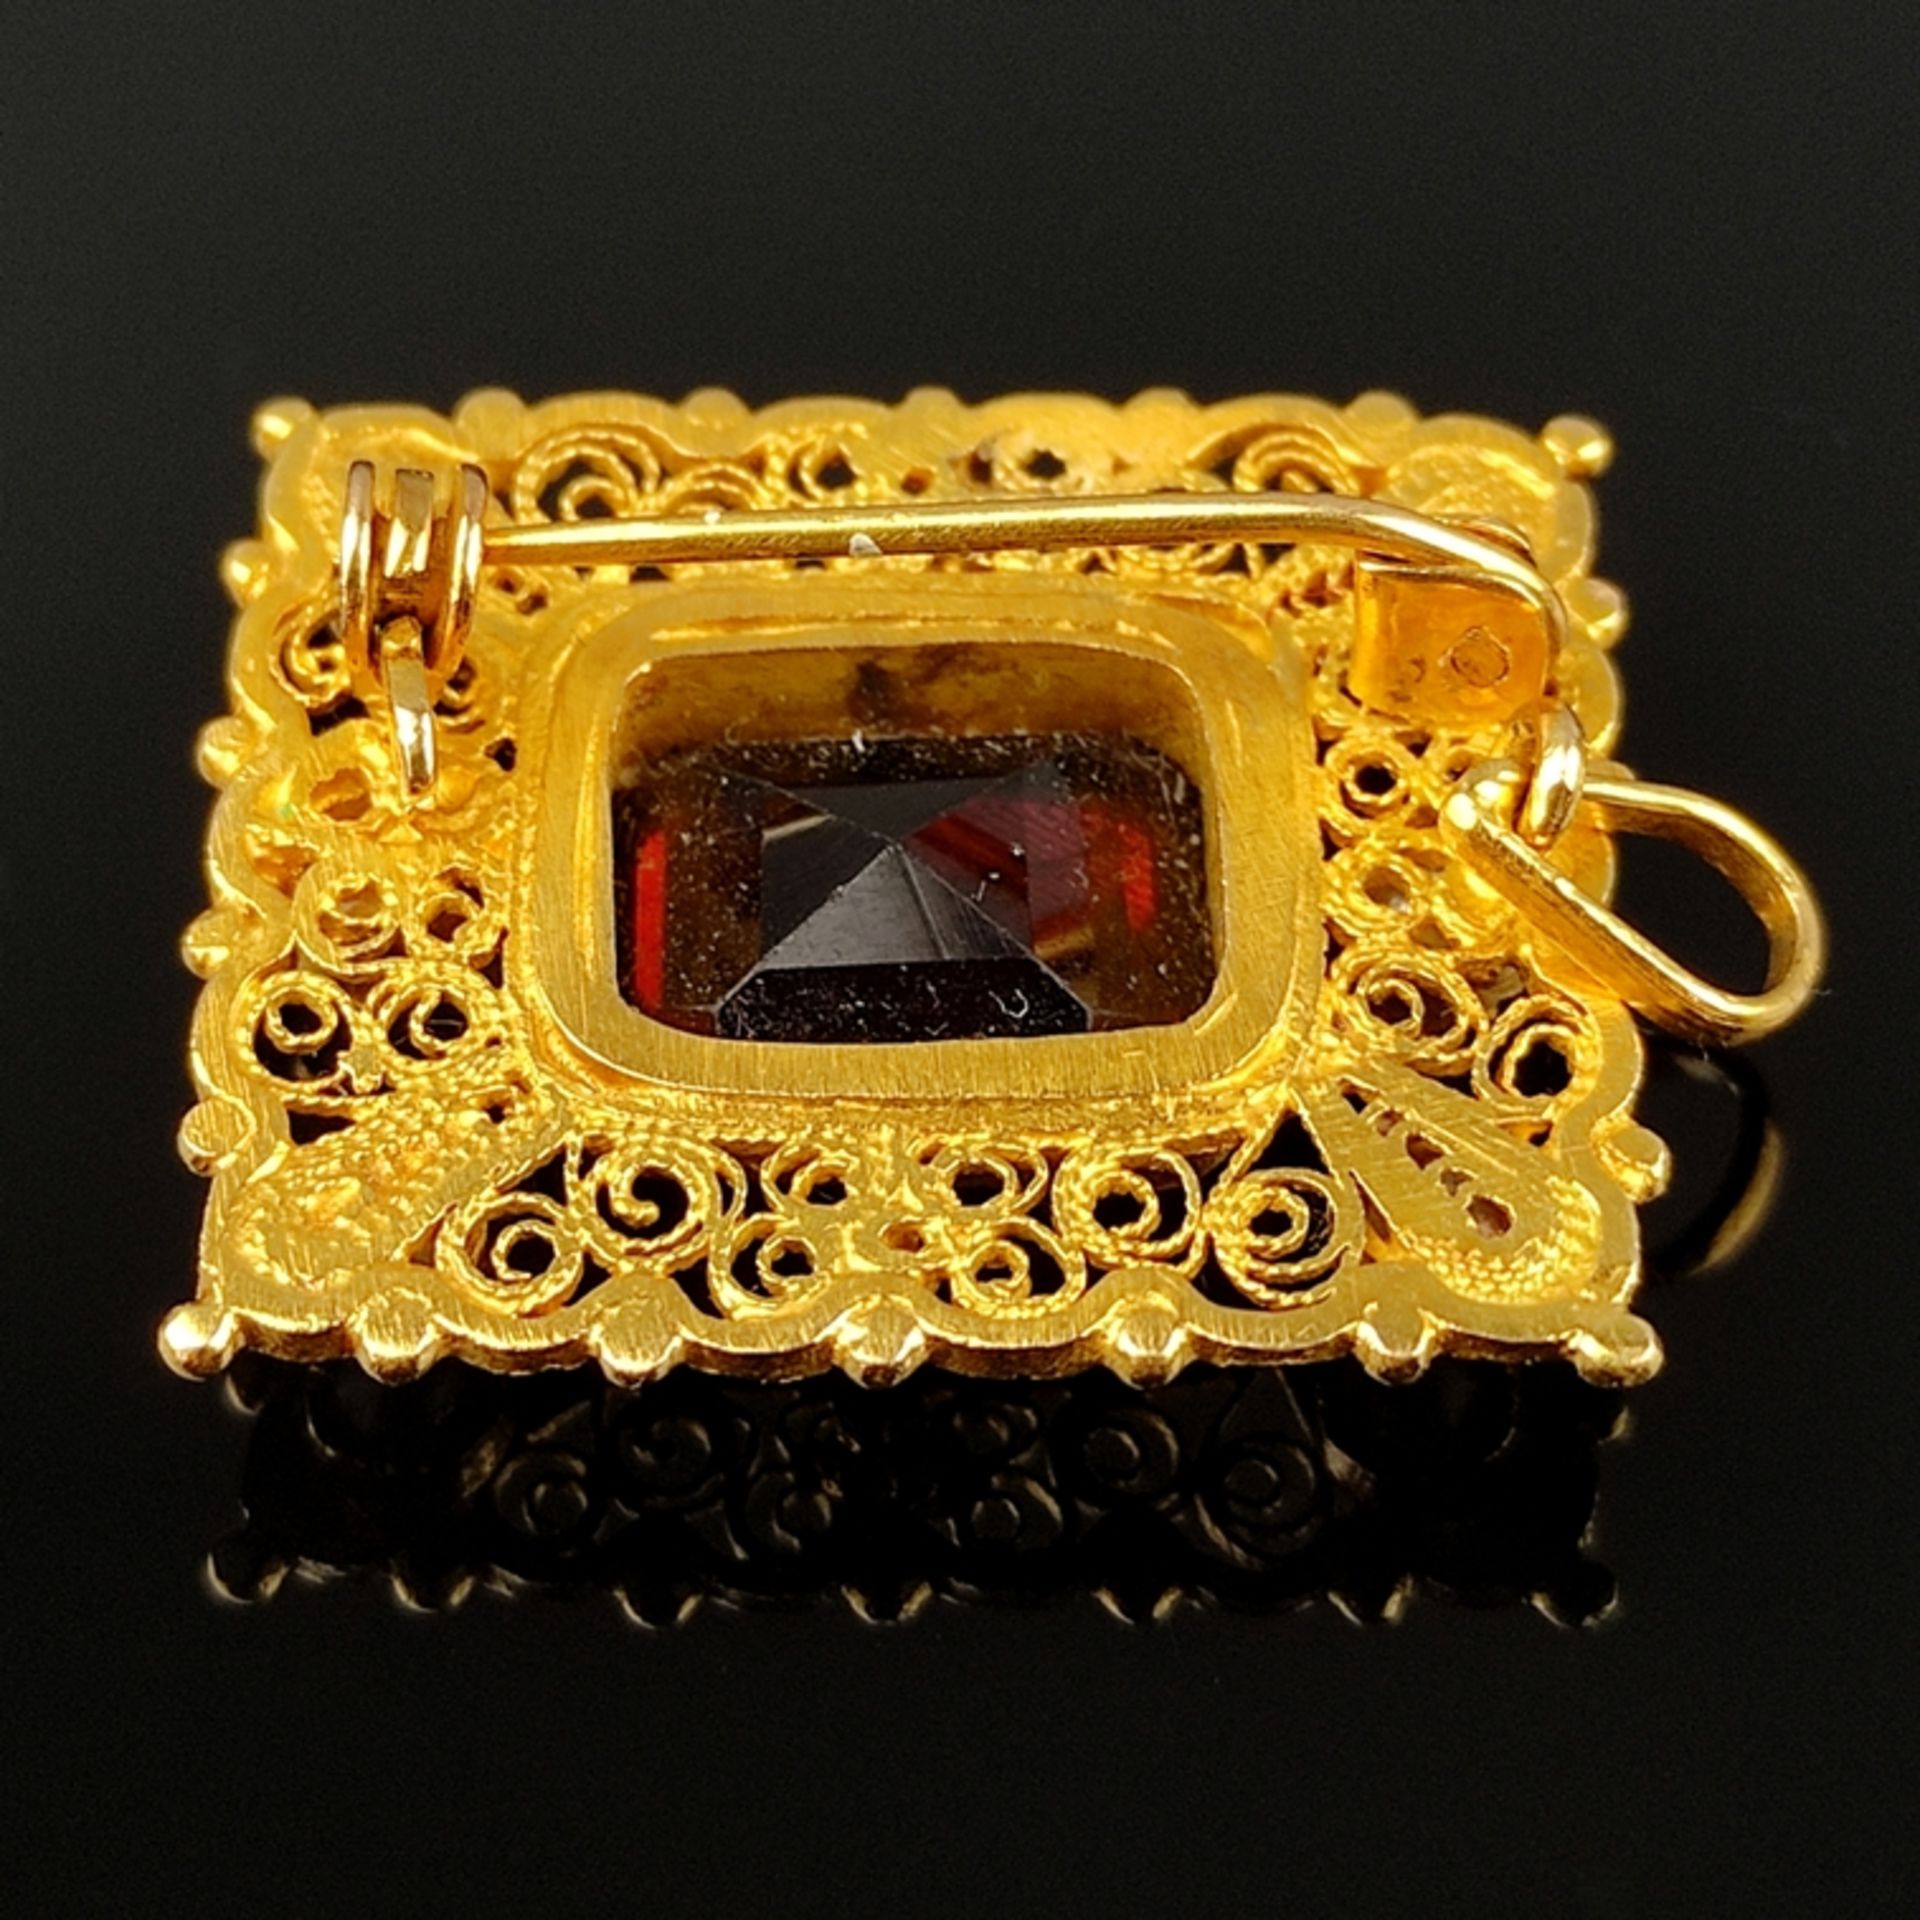 Persische Granat-Gold-Brosche/Anhänger, mindestens 875/21K Gelbgold (getestet), 8g, mittig großer f - Bild 3 aus 3